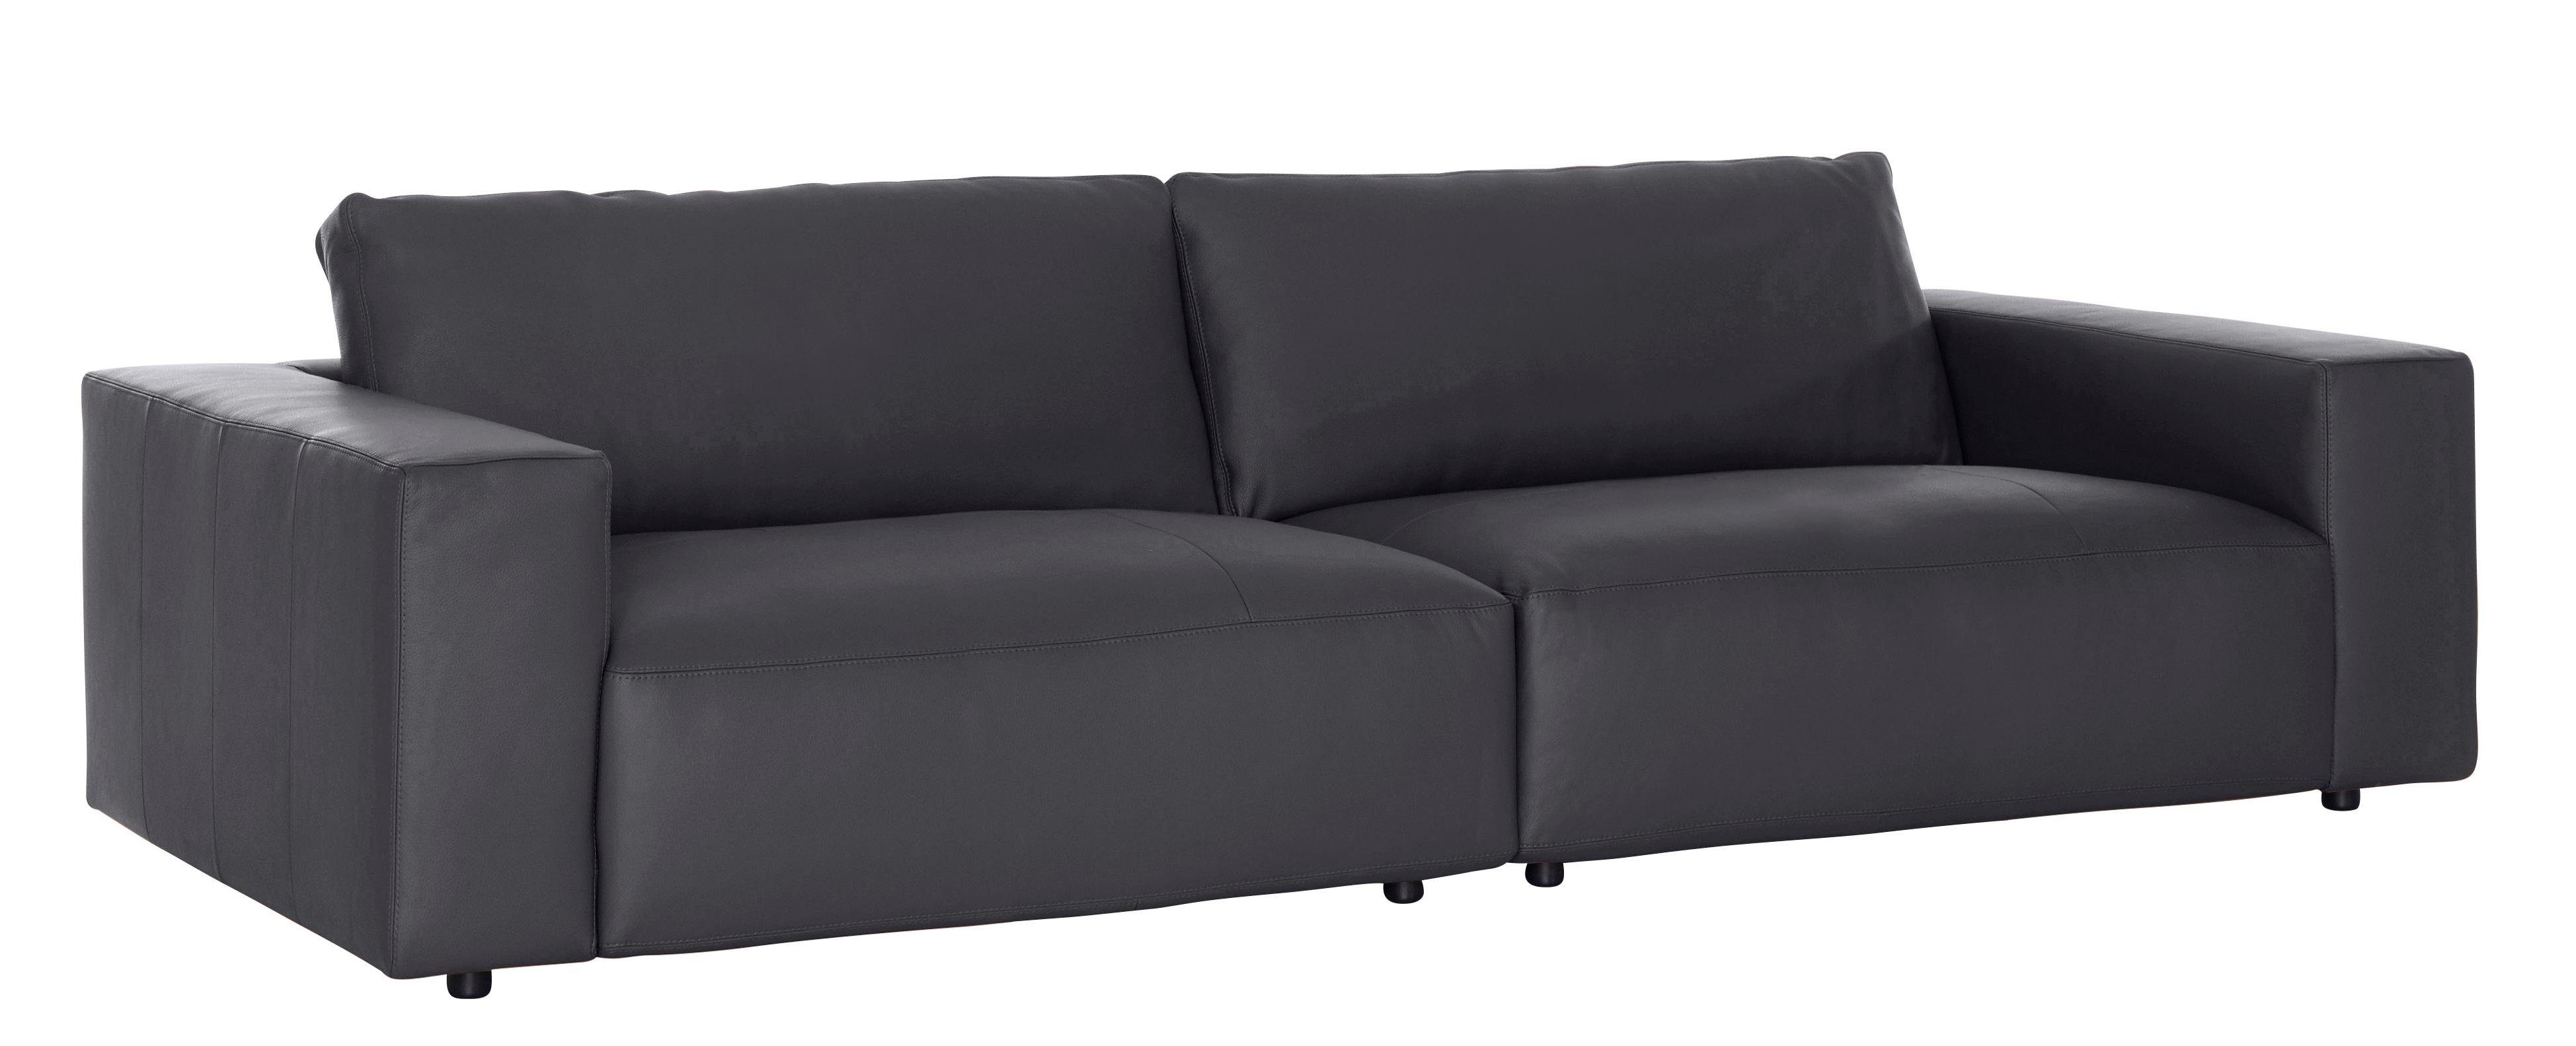 by unterschiedlichen und vielen Big-Sofa Musterring Nähten, branded in 3-Sitzer M GALLERY LUCIA, Qualitäten 4